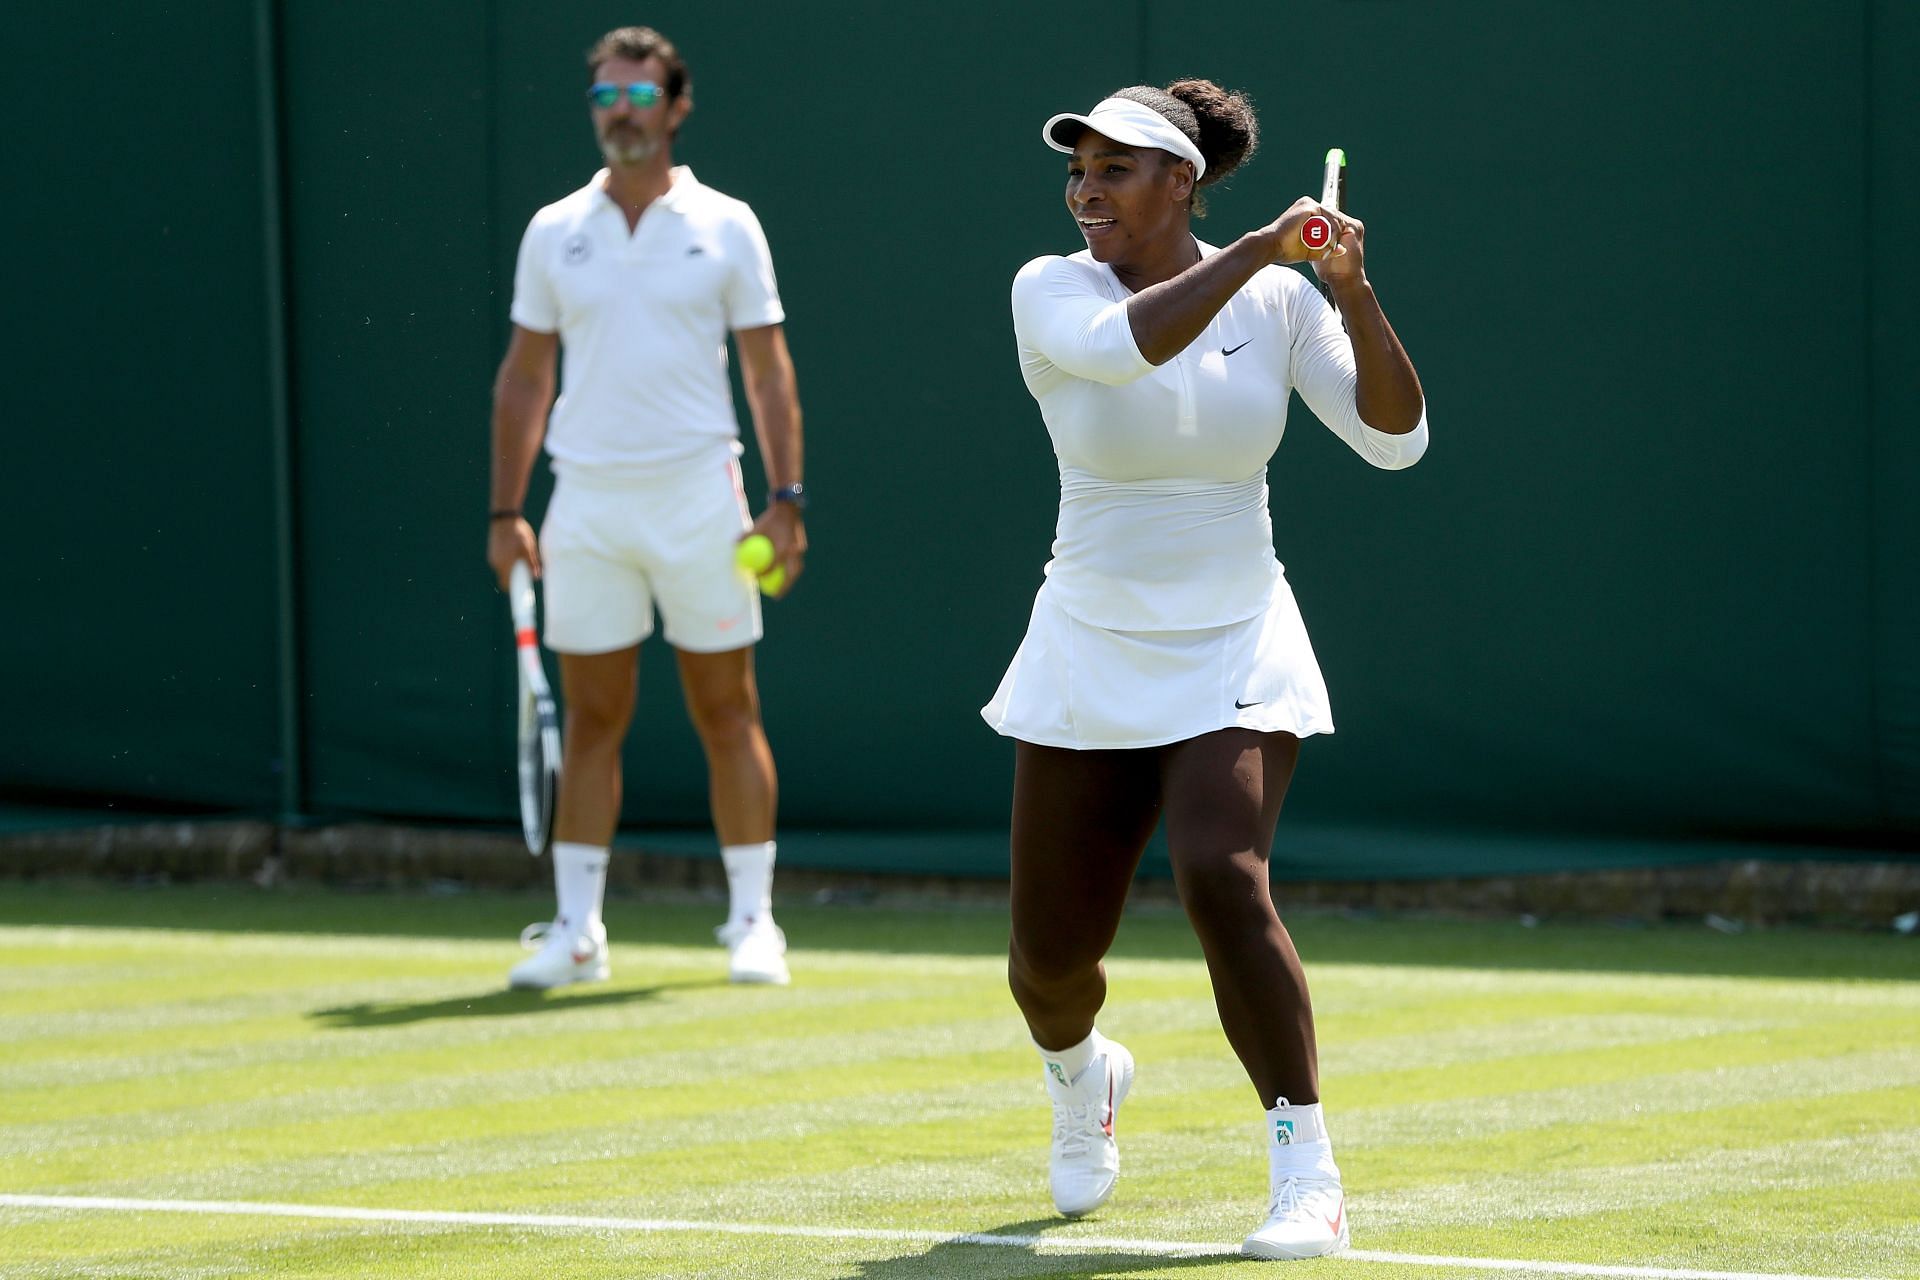 Patrick Mouratoglou (L) and Serena Williams